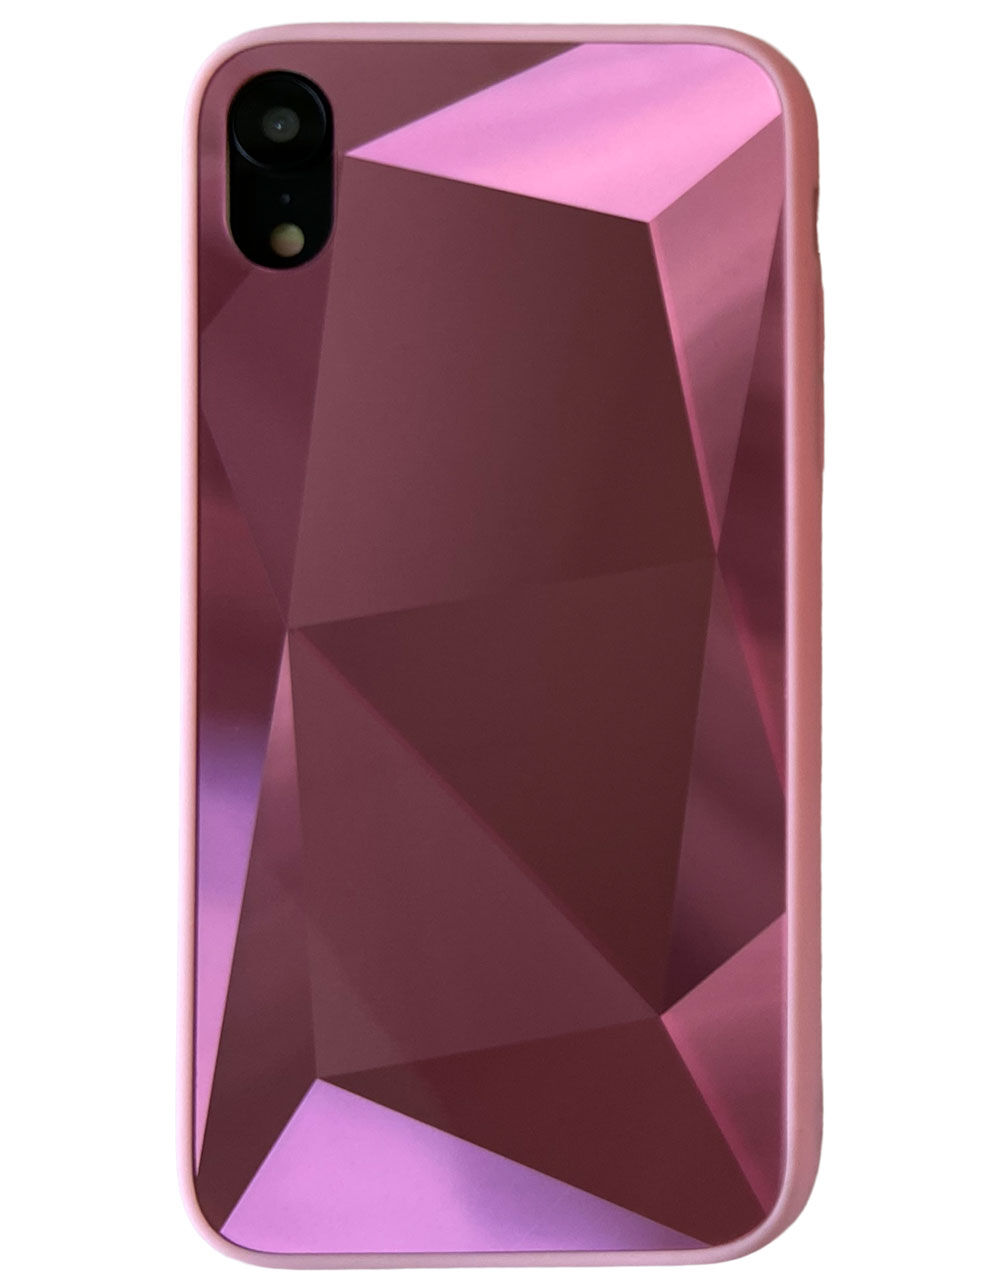 ROQQ Gem Pink iPhone XR Case